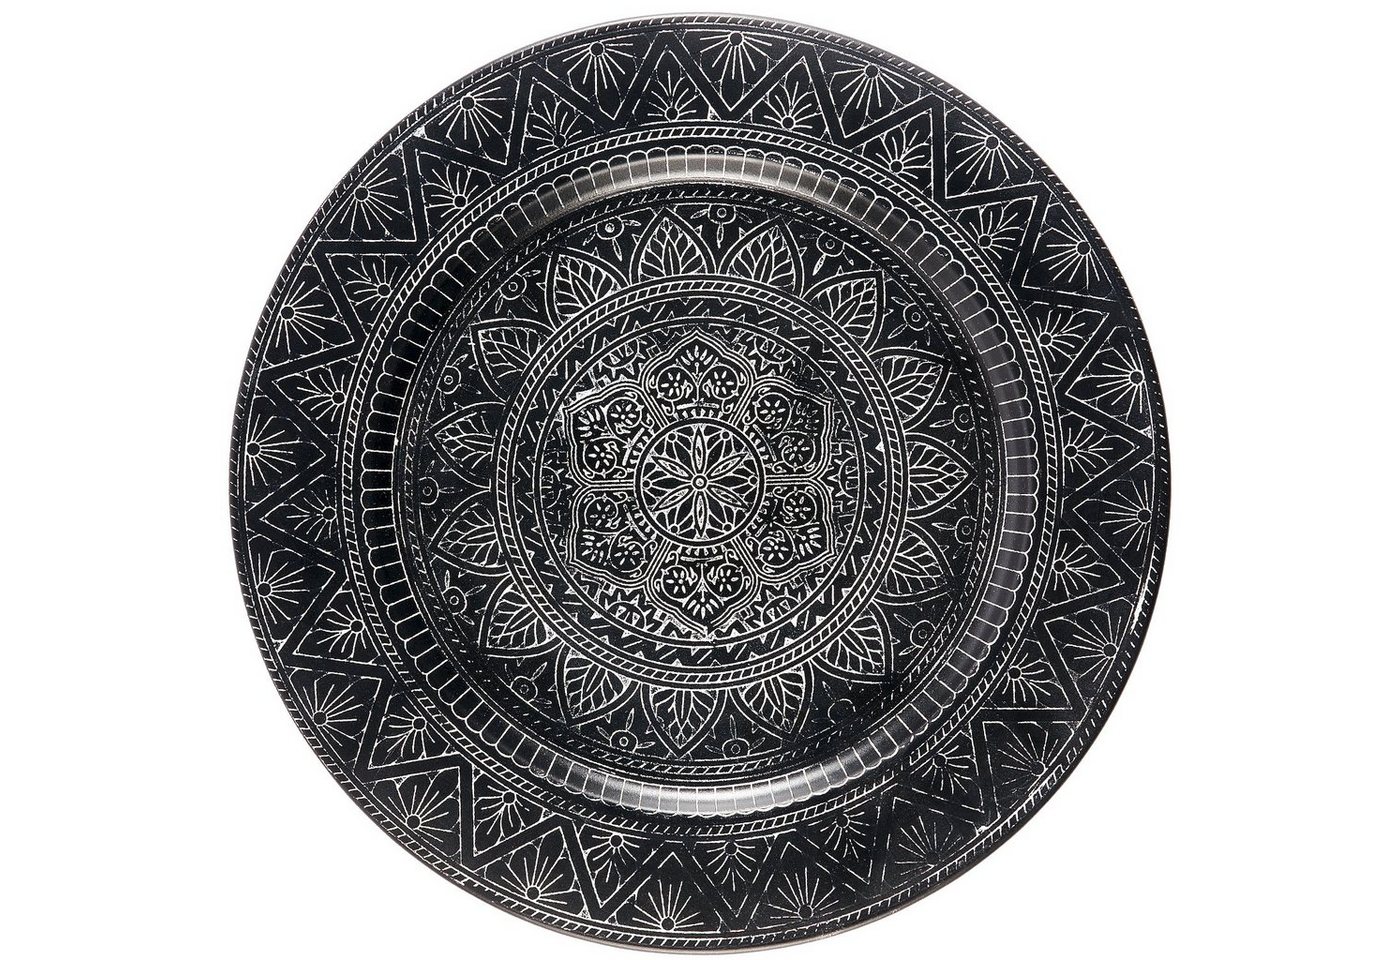 Marrakesch Orient & Mediterran Interior Tablett Orientalisches rundes Tablett aus Metall Manar 35cm, Handarbeit von Marrakesch Orient & Mediterran Interior